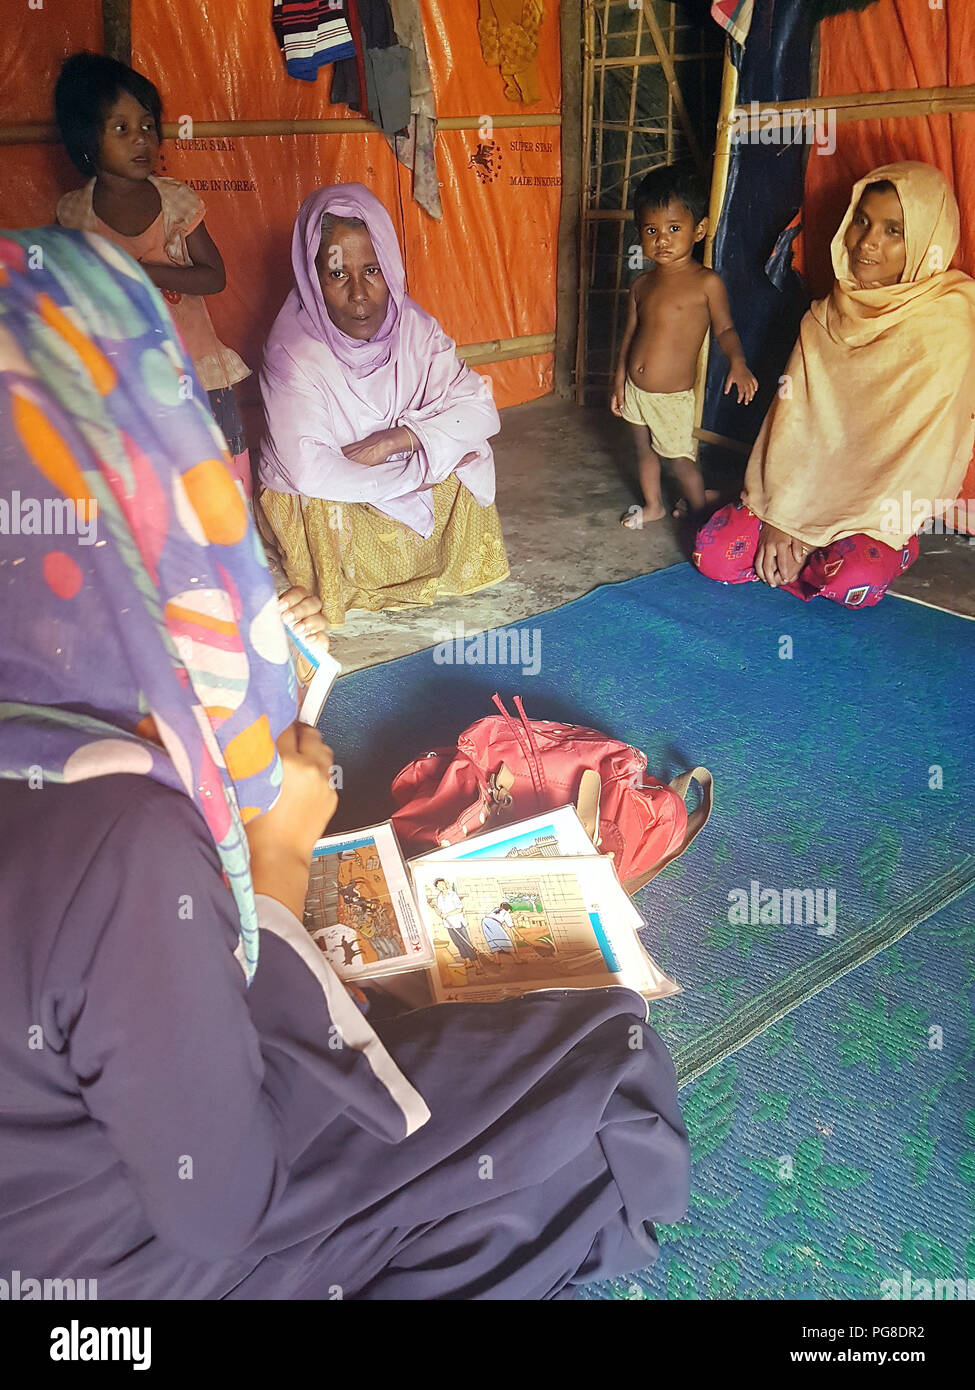 13 agosto 2018, Bangladesh, Cox's Bazar: i dipendenti della Mezzaluna Rossa del Bangladesh spiegare agli abitanti di un Rohingya campo di rifugiati nel loro rifugio quali misure igieniche possono adottare per proteggersi dalle malattie. Foto: Nick Kaiser/dpa Foto Stock